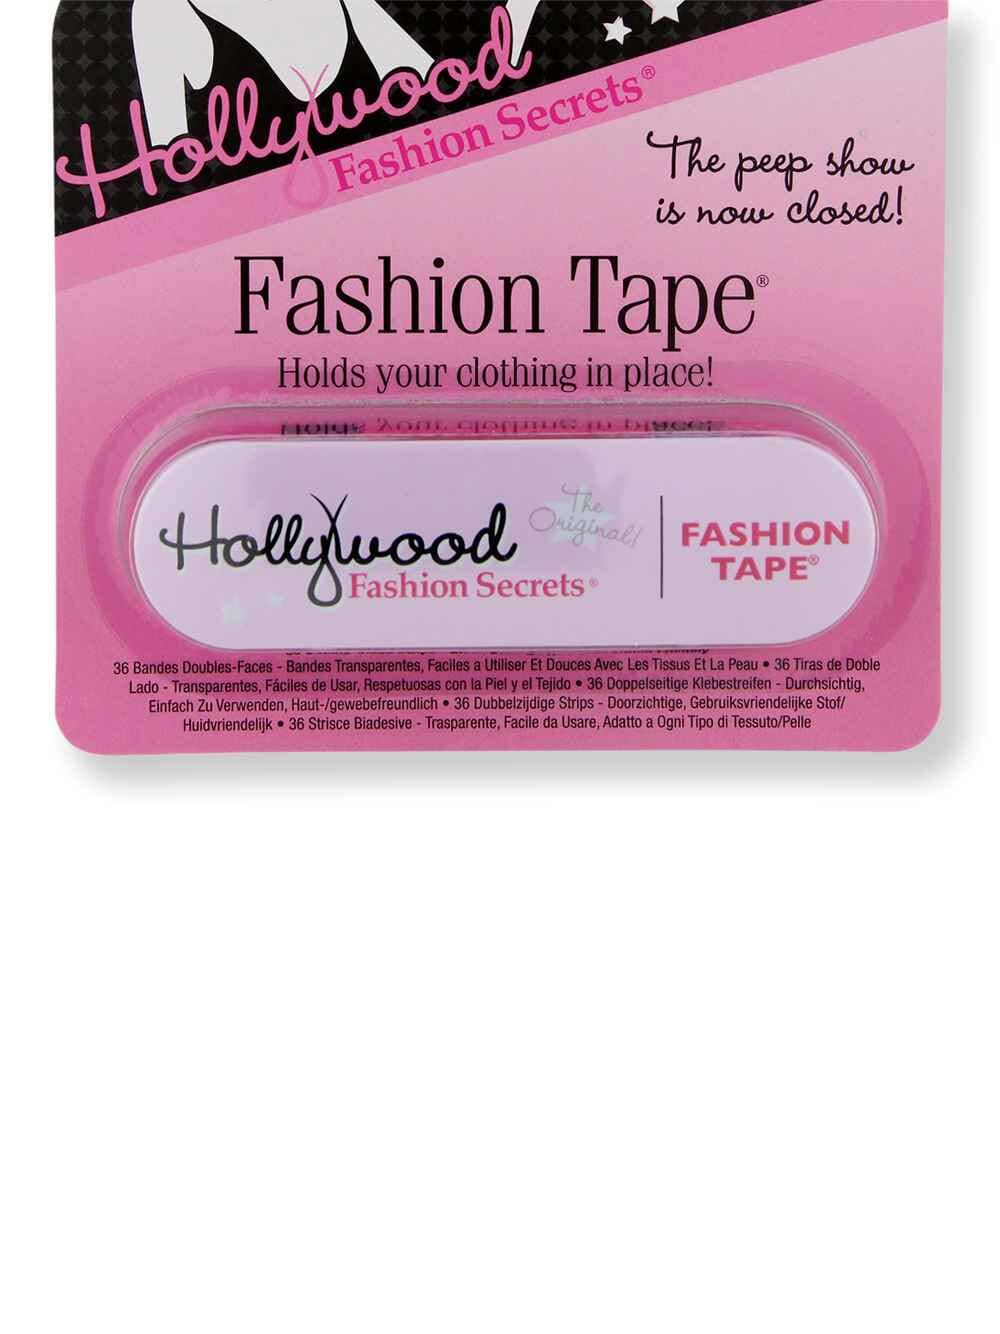 Hollywood Fashion Secrets Hollywood Fashion Secrets Fashion Tape 36 ct Apparel Accessories 